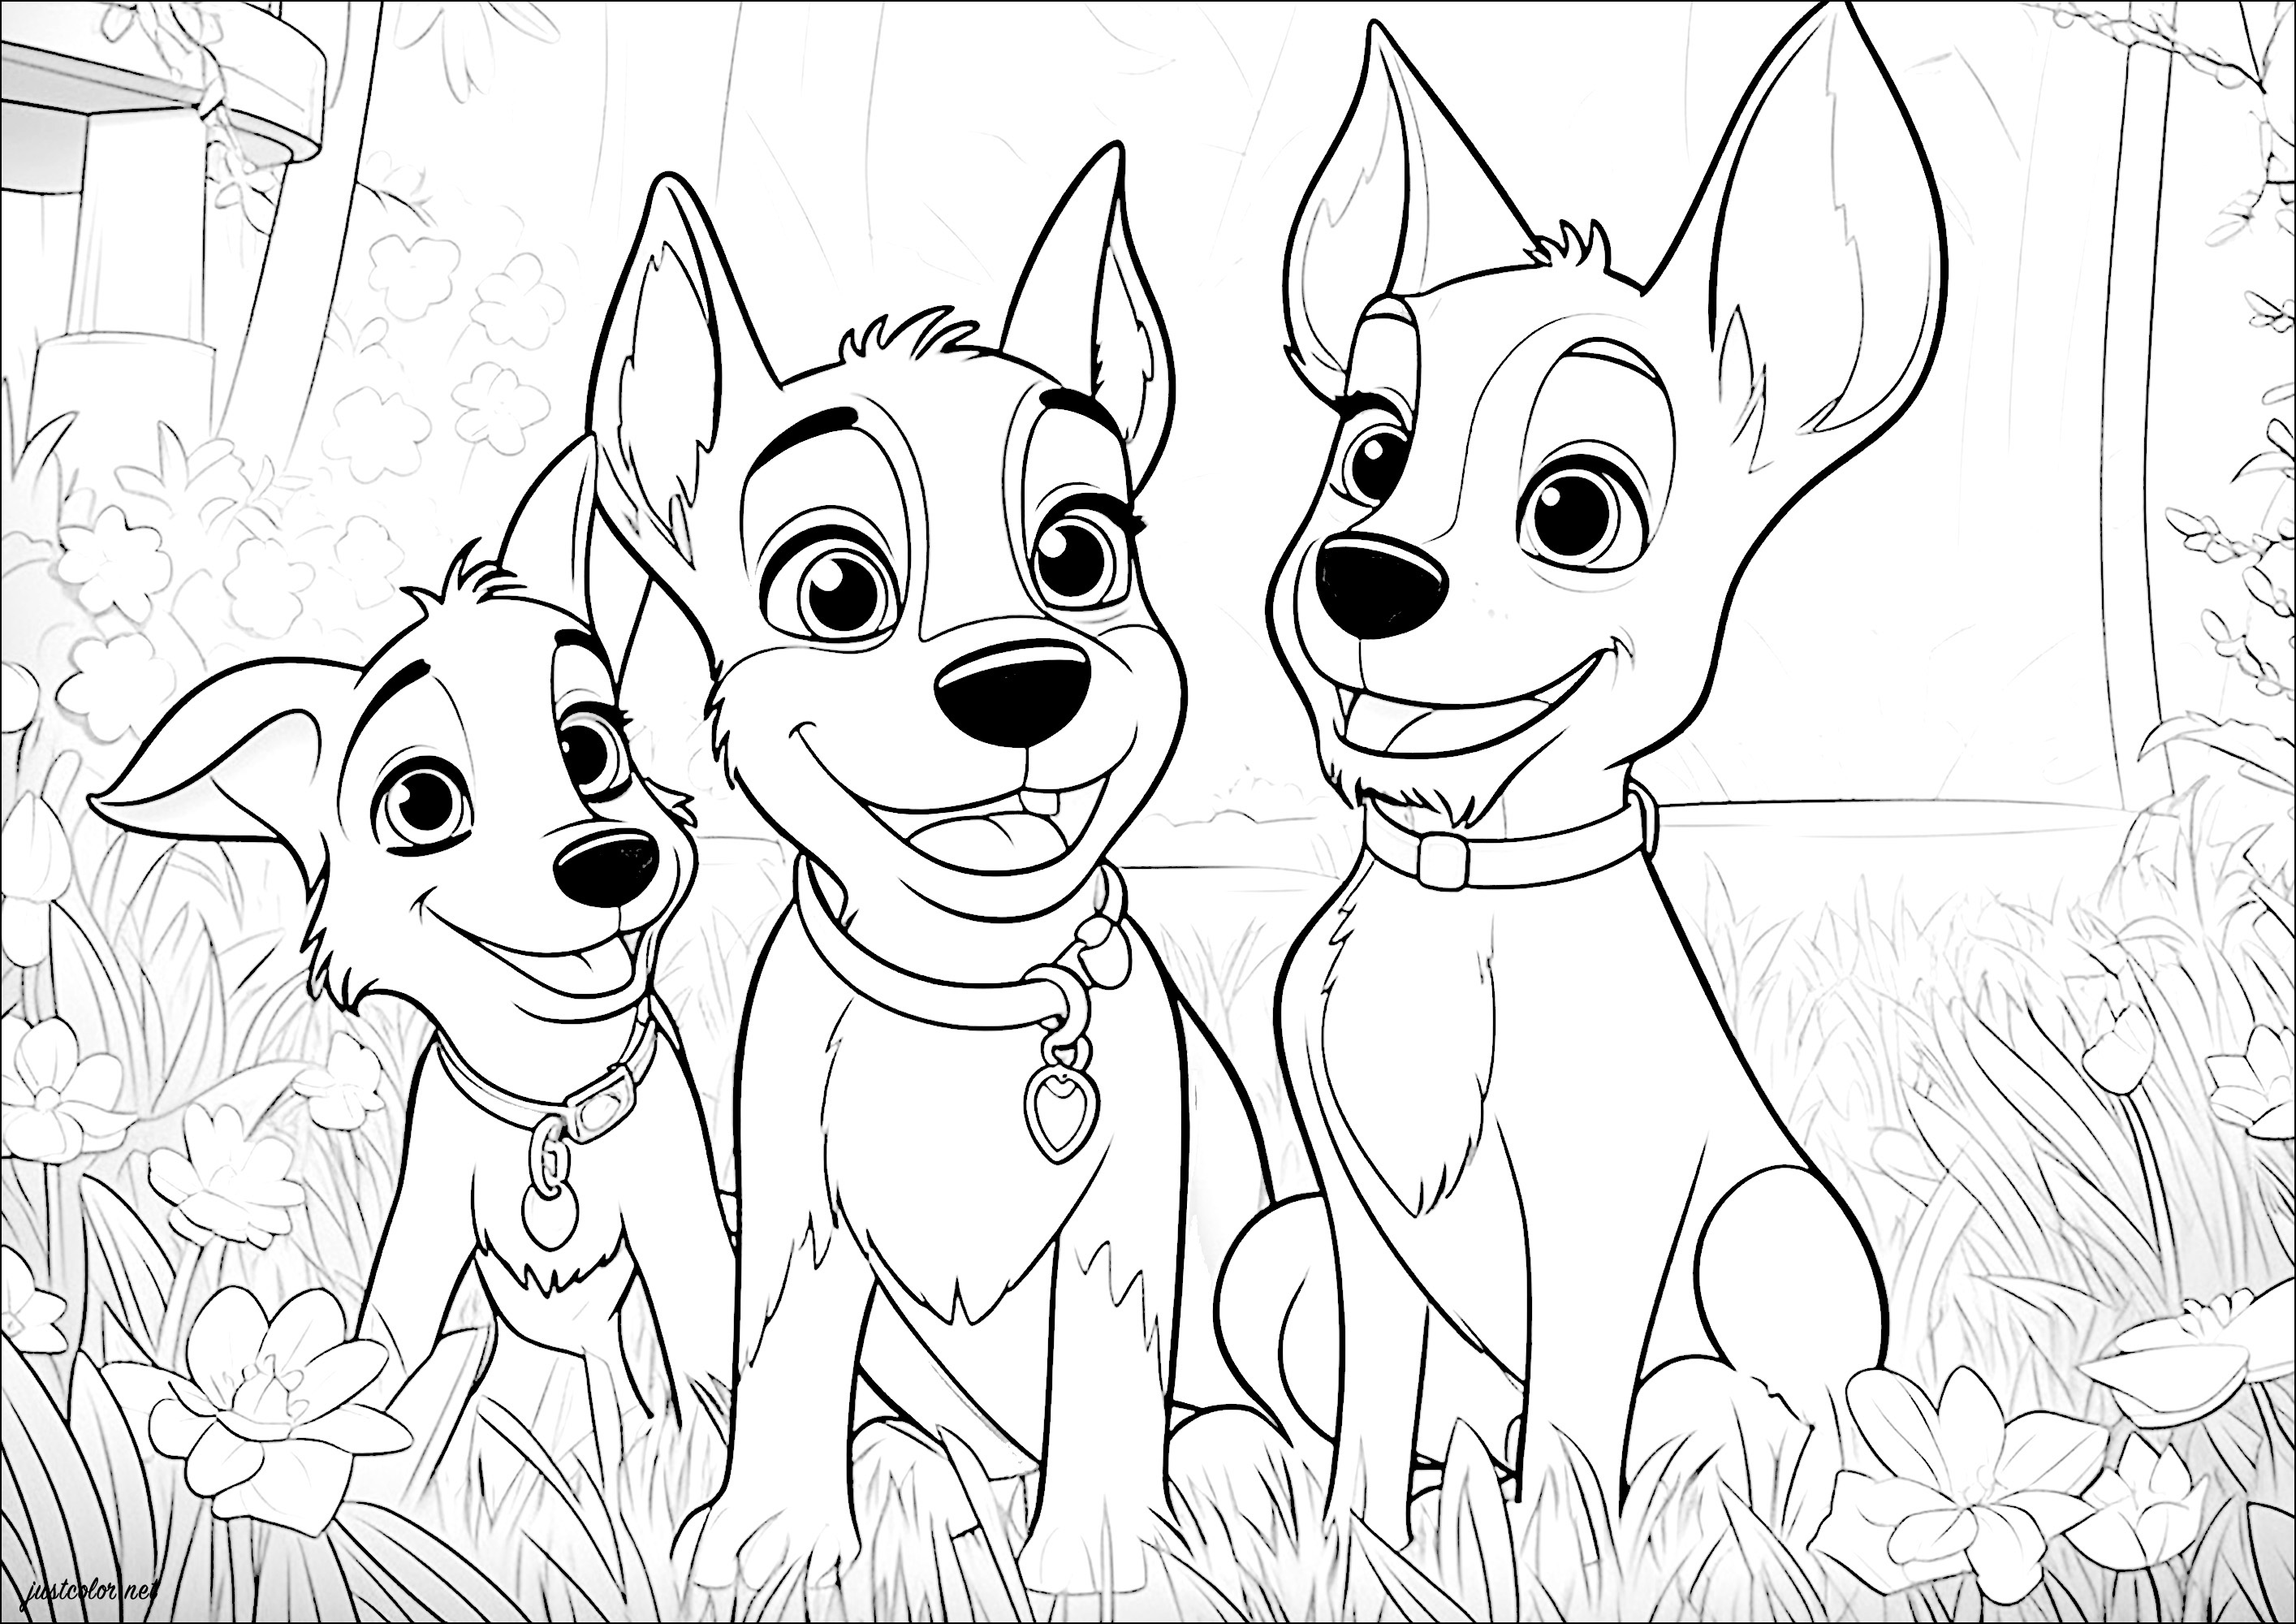 Trois chiens joyeux dans un jardin. Un coloriage assez simple de trois chiens dans un jardin